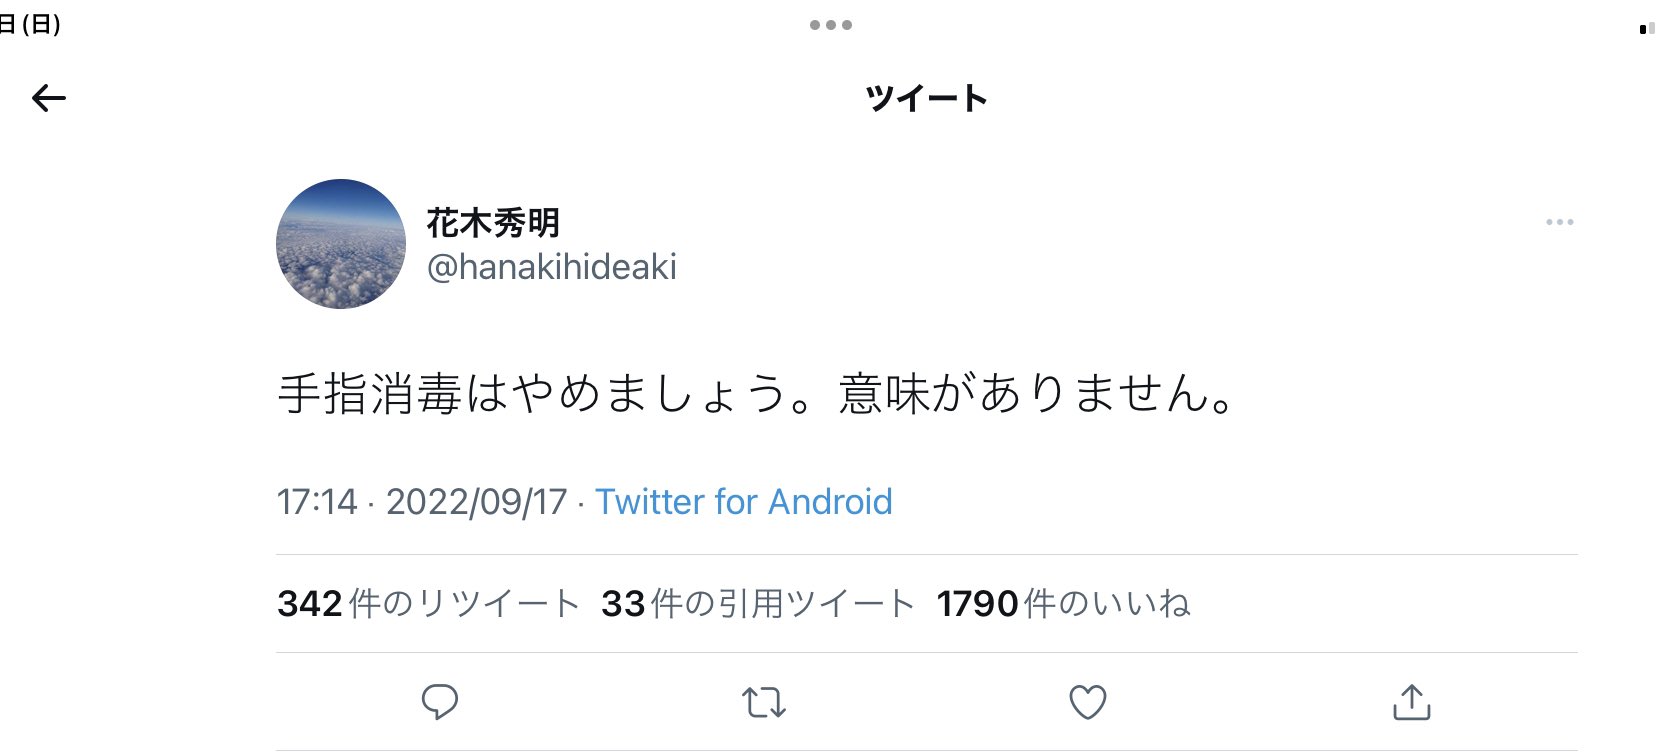 前田英俊 Hidetoshi Maeda Dds Phd 歯科医師 ランナー ライダー Farfallone Twitter